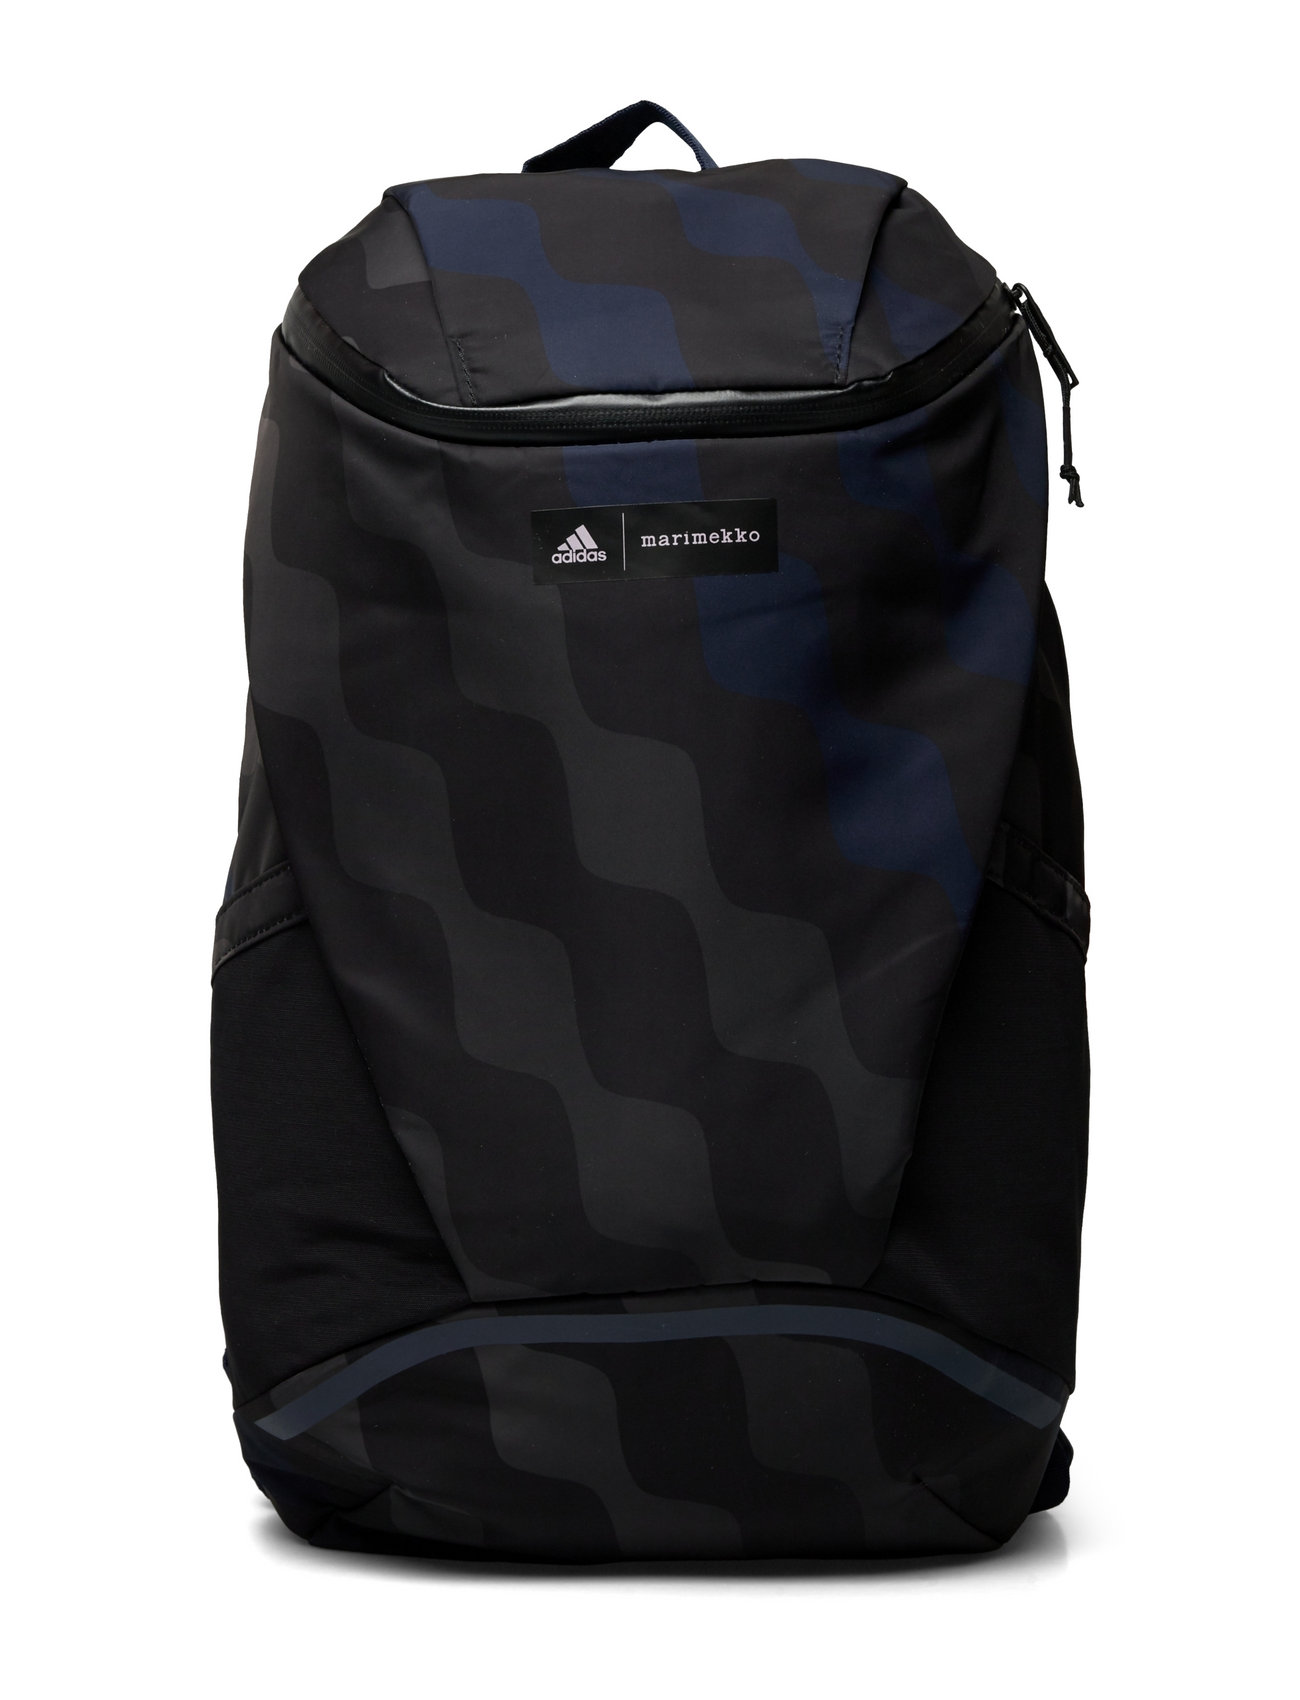 adidas Performance Marimekko Designed For Training Backpack - Reput -  